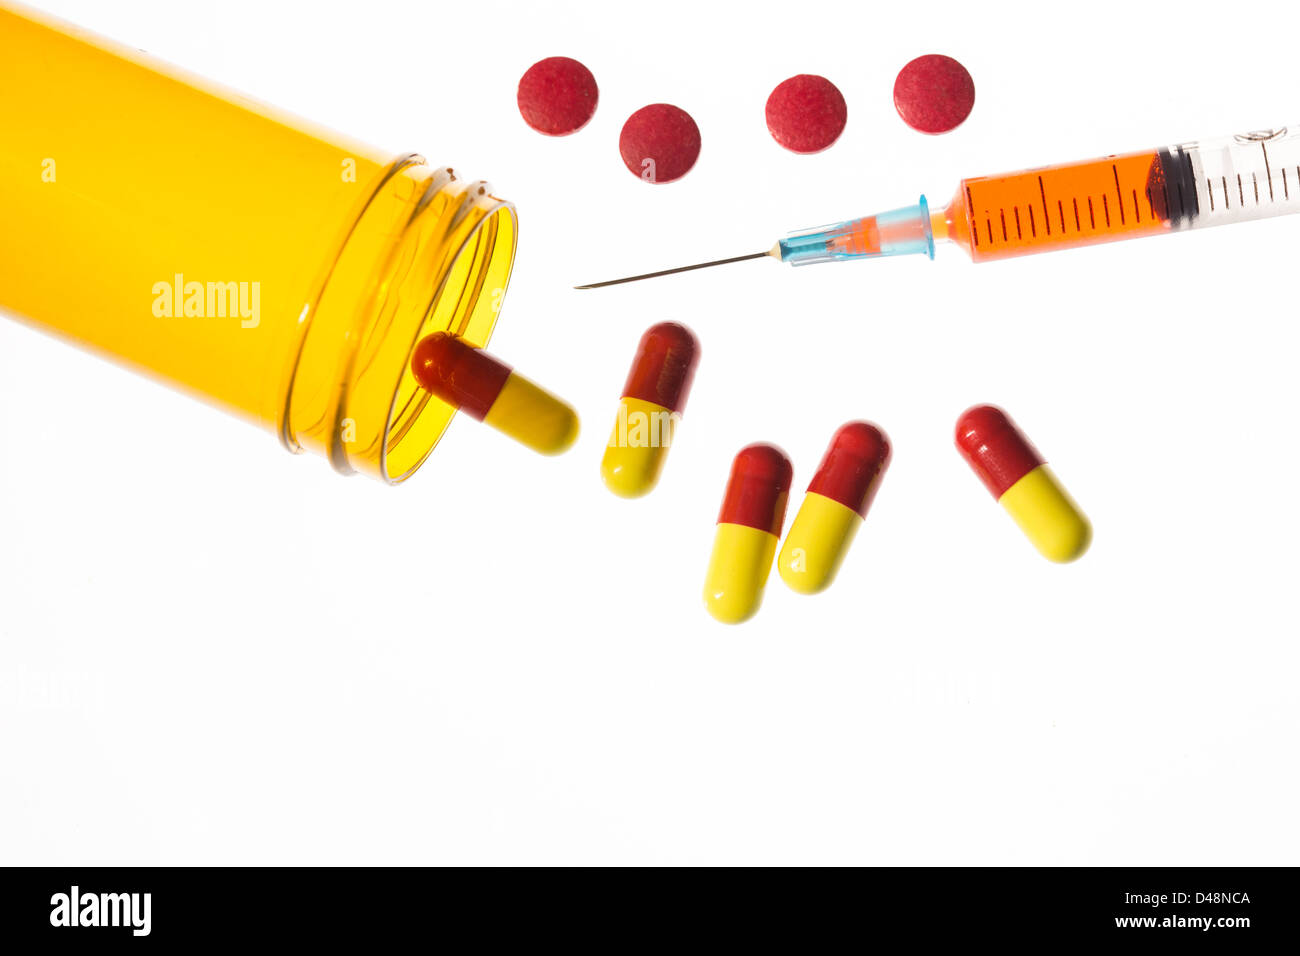 Jar of medicine spilling tablets with syringe Stock Photo